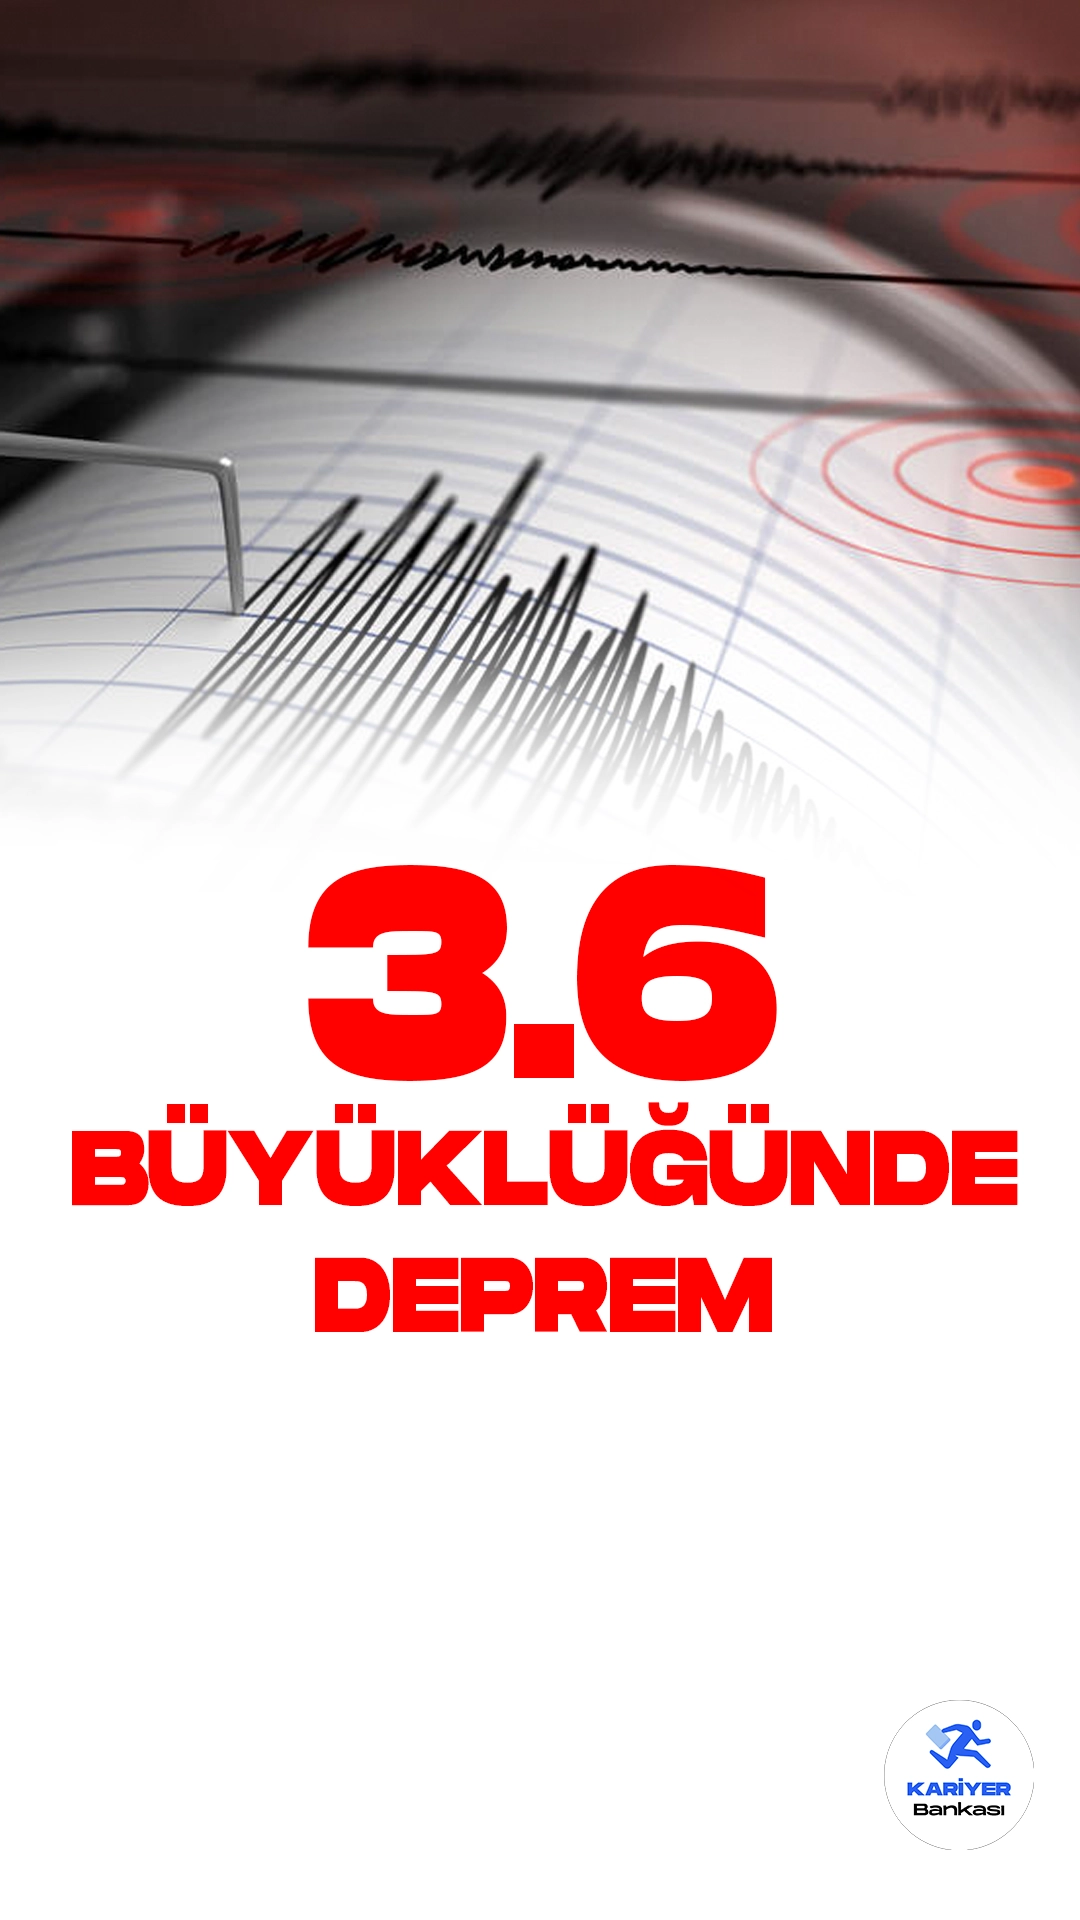 Malatya'da 3.6 Büyüklüğünde Deprem Oldu. İçişleri Bakanlığı Afet ve Acil Durum Yönetimi Başkanlığı resmi sayfasından yayımlanan son dakika bilgisine göre, Malatya'nın Pütürge ilçesinde 3.6 büyüklüğünde deprem meydana geldiği aktarıldı.